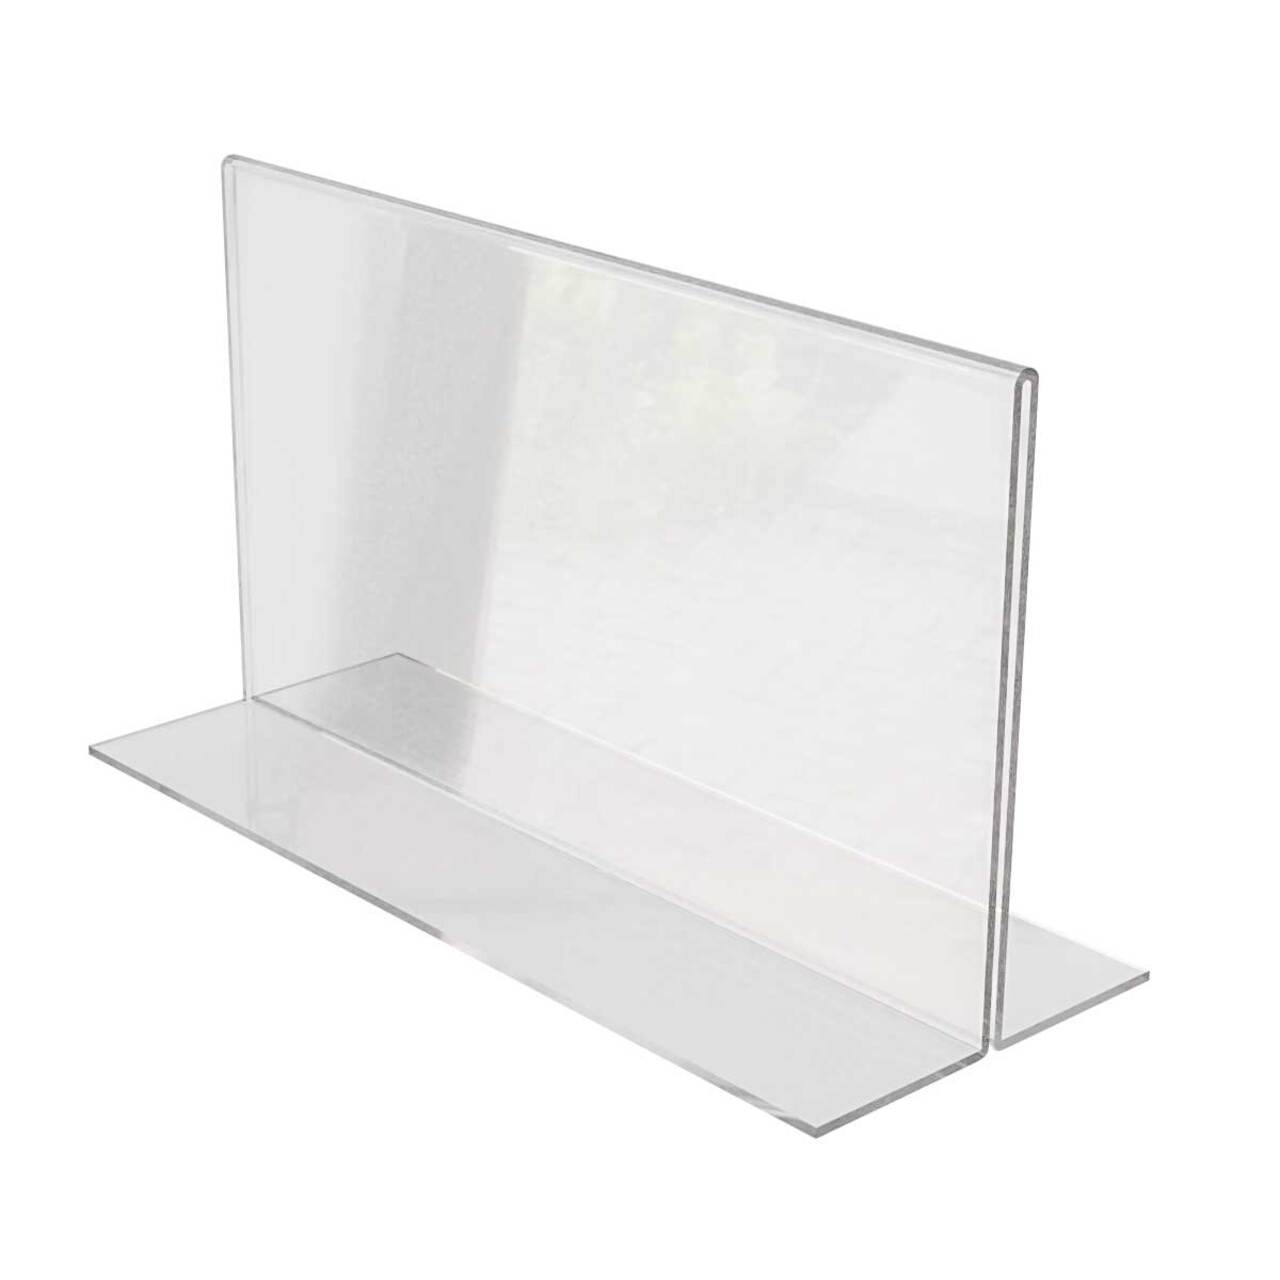 Suport meniu din plastic transparent pentru birou, 100 x 210 mm Landscape